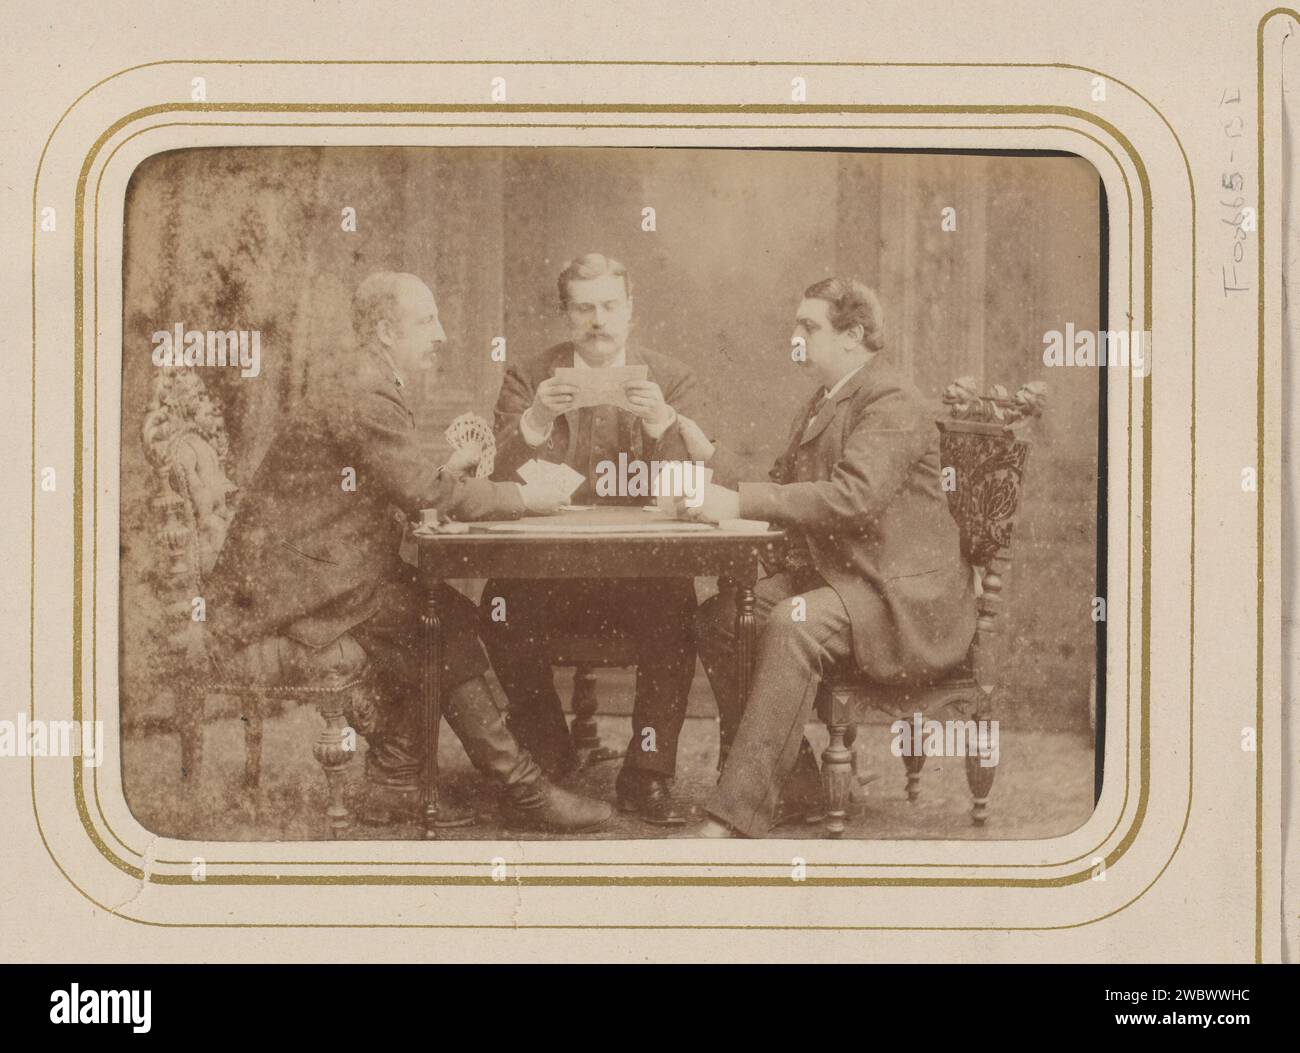 Gruppenporträt von drei Männern Kartenspiel und Lesen, Carel Eduard Westerborg, 1861 - 1890 Foto. Cabinet Foto dieses Foto ist Teil eines Albums. Arnheim-Karton. Fotografische Trägeralbumen drucken anonyme historische Personen, die in einer Gruppe dargestellt werden, in einem Gruppenporträt. Spielkarten Stockfoto